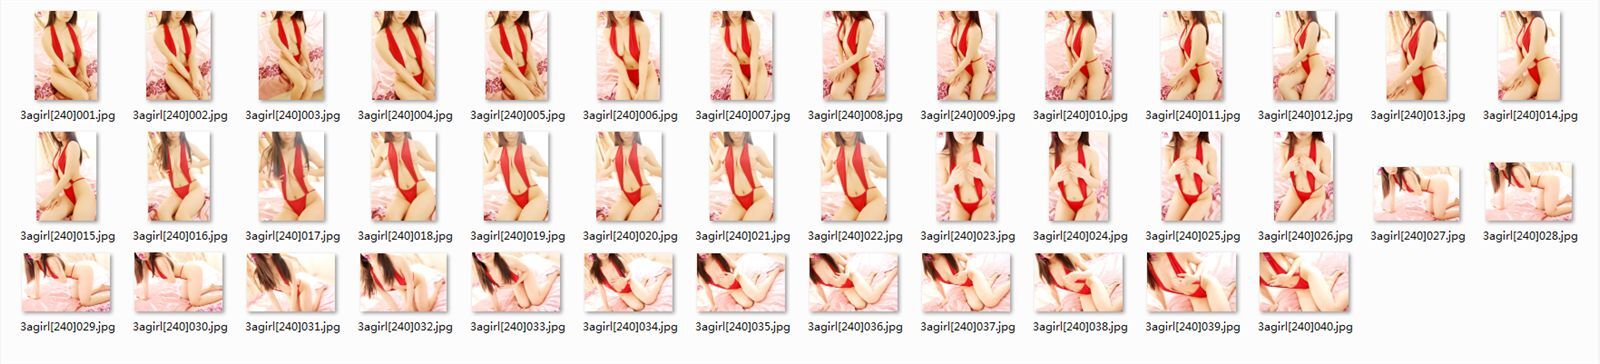 [3agirl] 2014.04.05 AAA girl no.240 Yuji breast beauty (1): meisui